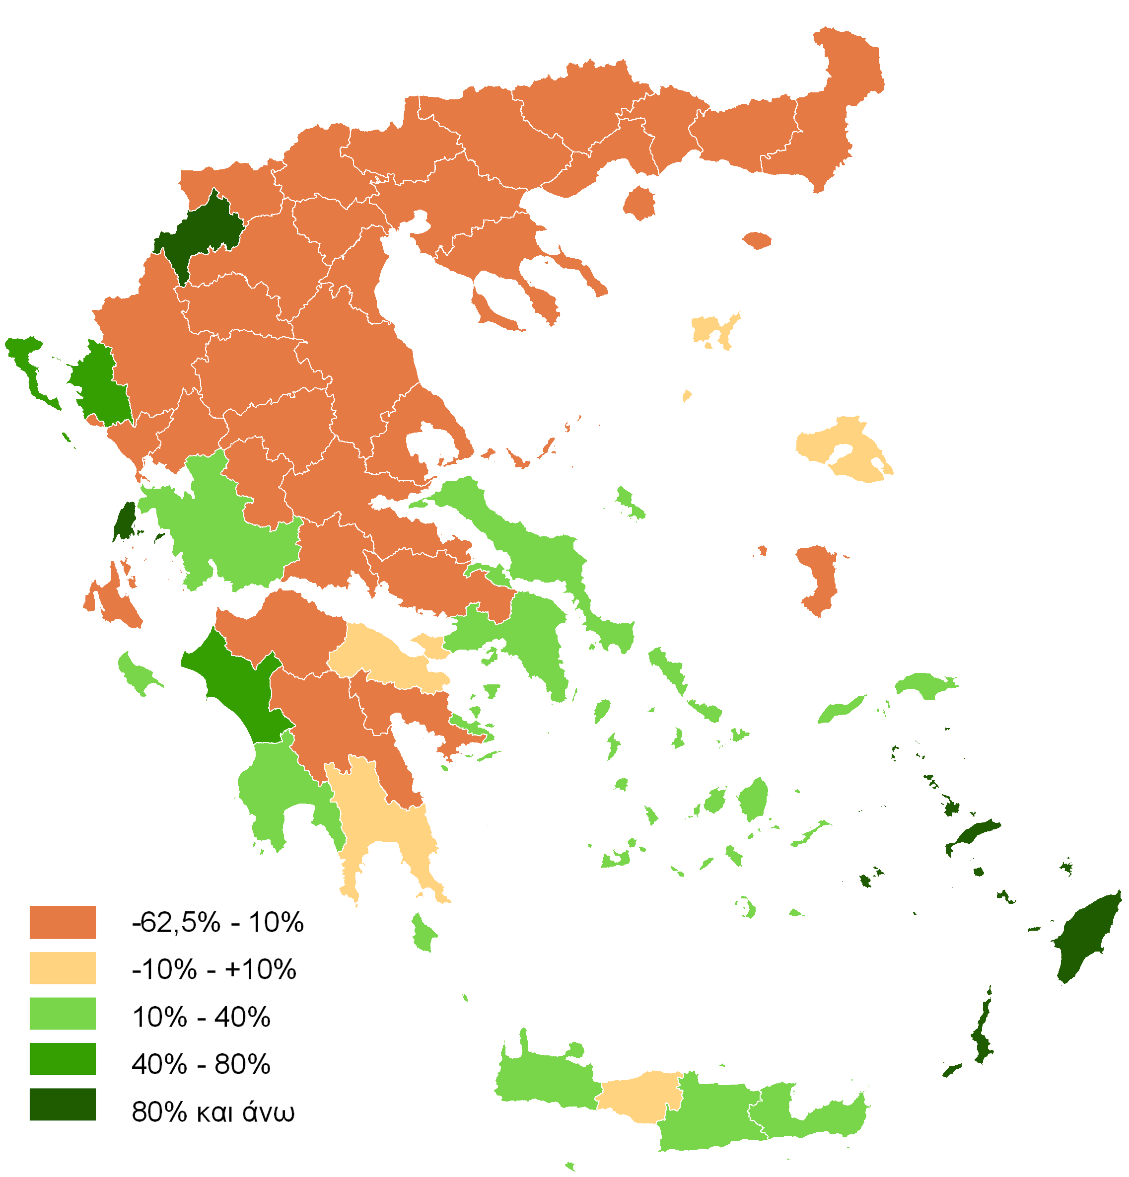 μεταναστών, αν και υφίστανται περιοχές στη βόρεια και την κεντρική Ελλάδα, όπου σημειώθηκε σημαντική μείωση της εποχικής απασχόλησης λόγω προβλημάτων των τοπικών παραγωγικών συστημάτων ή έλλειψης